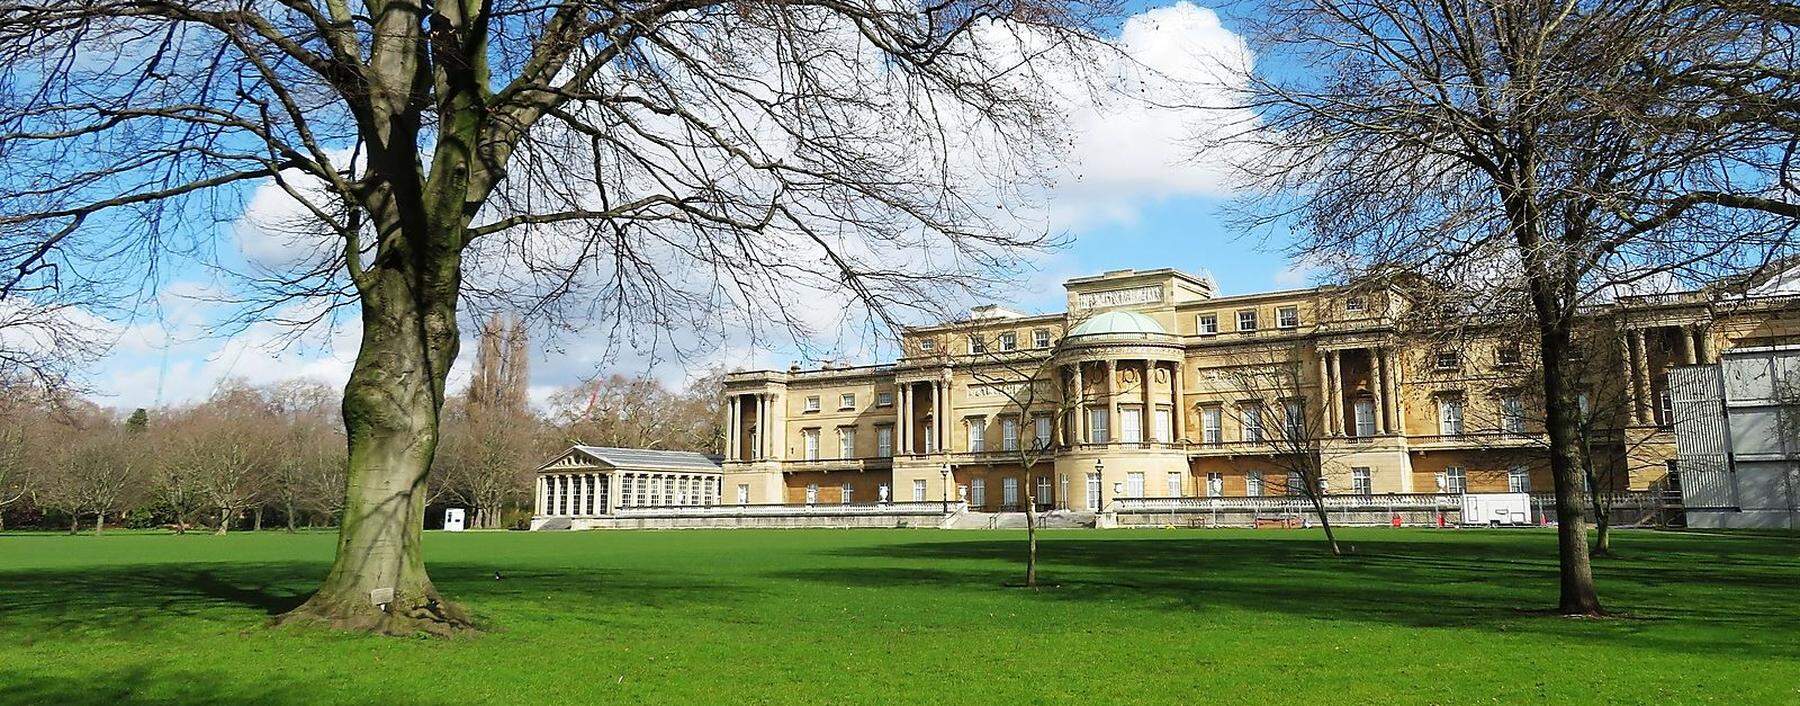 So ruhig sieht der Buckingham Palace vom Garten her aus. 